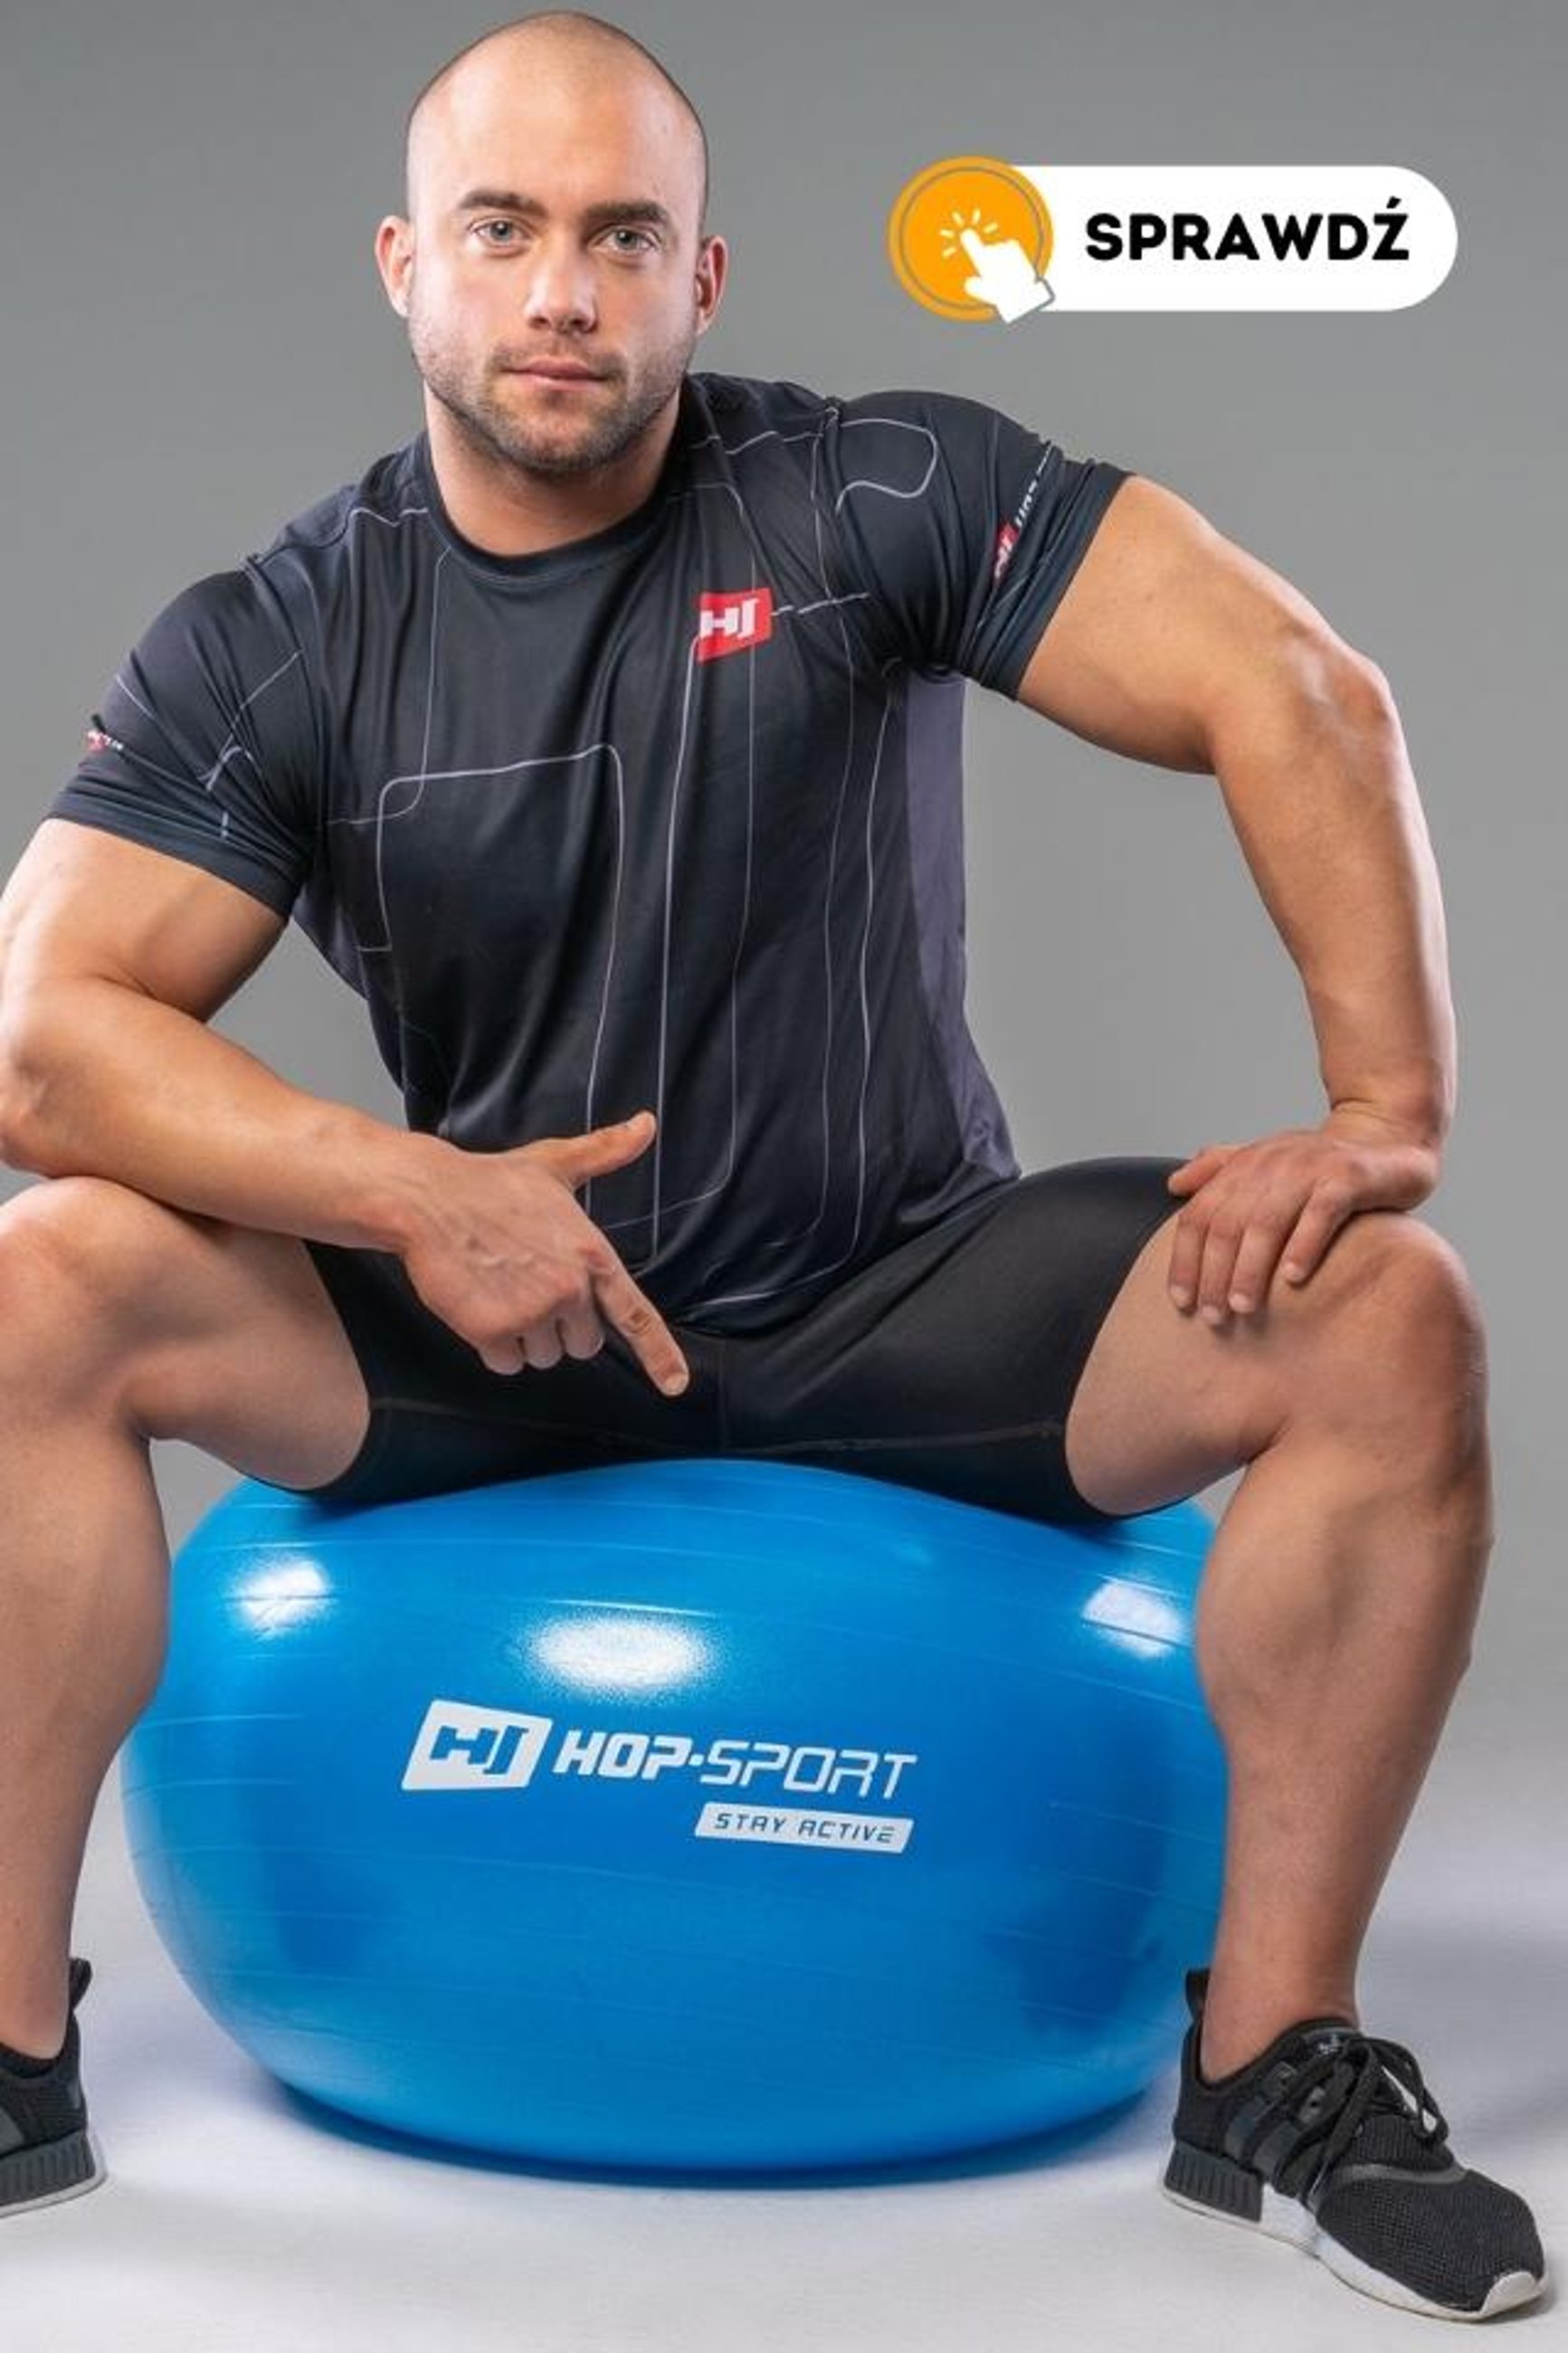 model siedzący na niebieskiej piłce gimnastycznej marki Hop-Sport